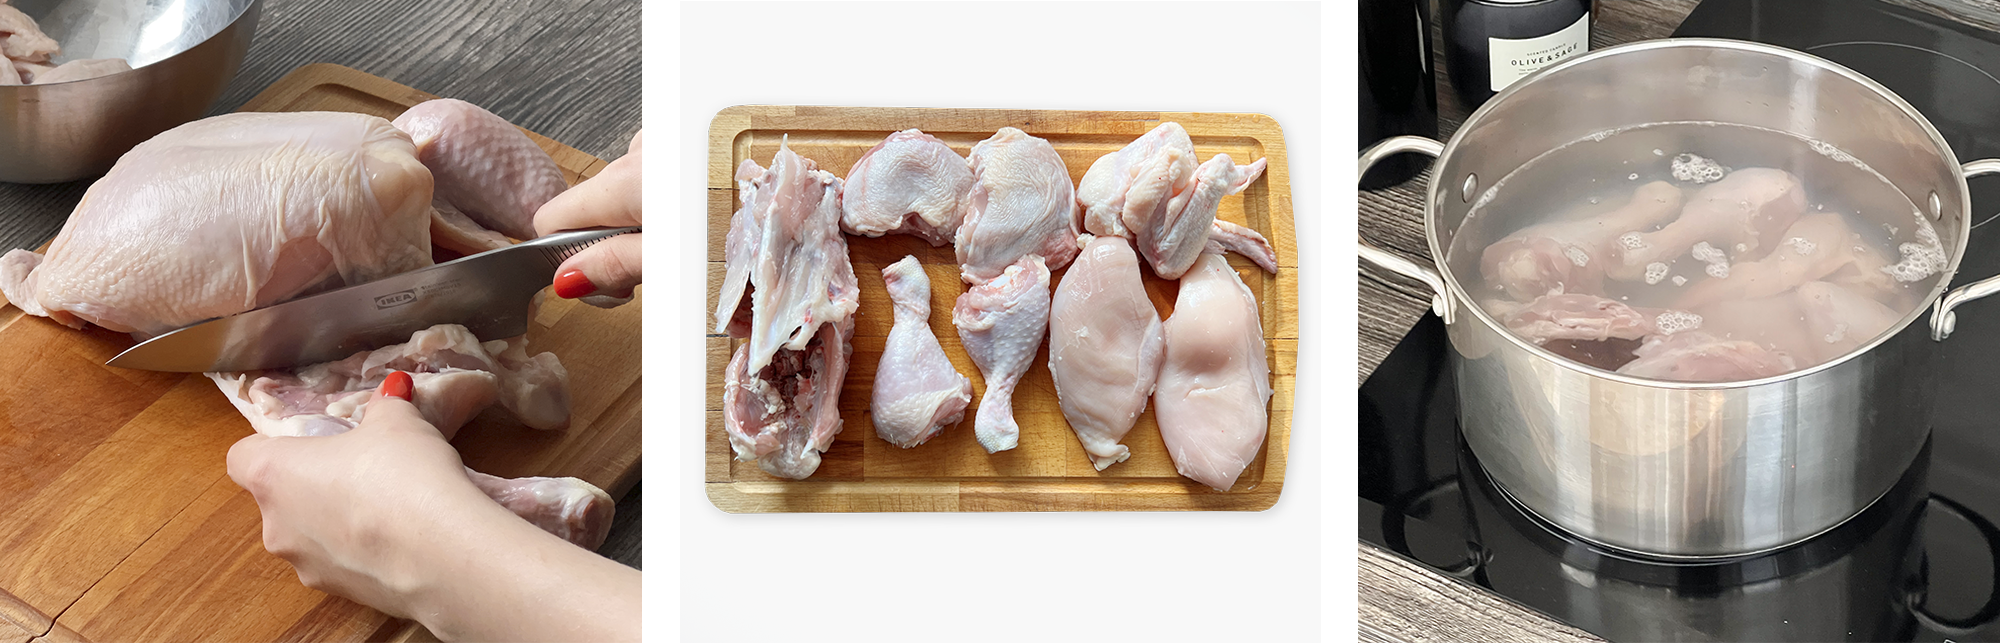 как сварить старую курицу чтобы мясо было мягким — 25 рекомендаций на l2luna.ru